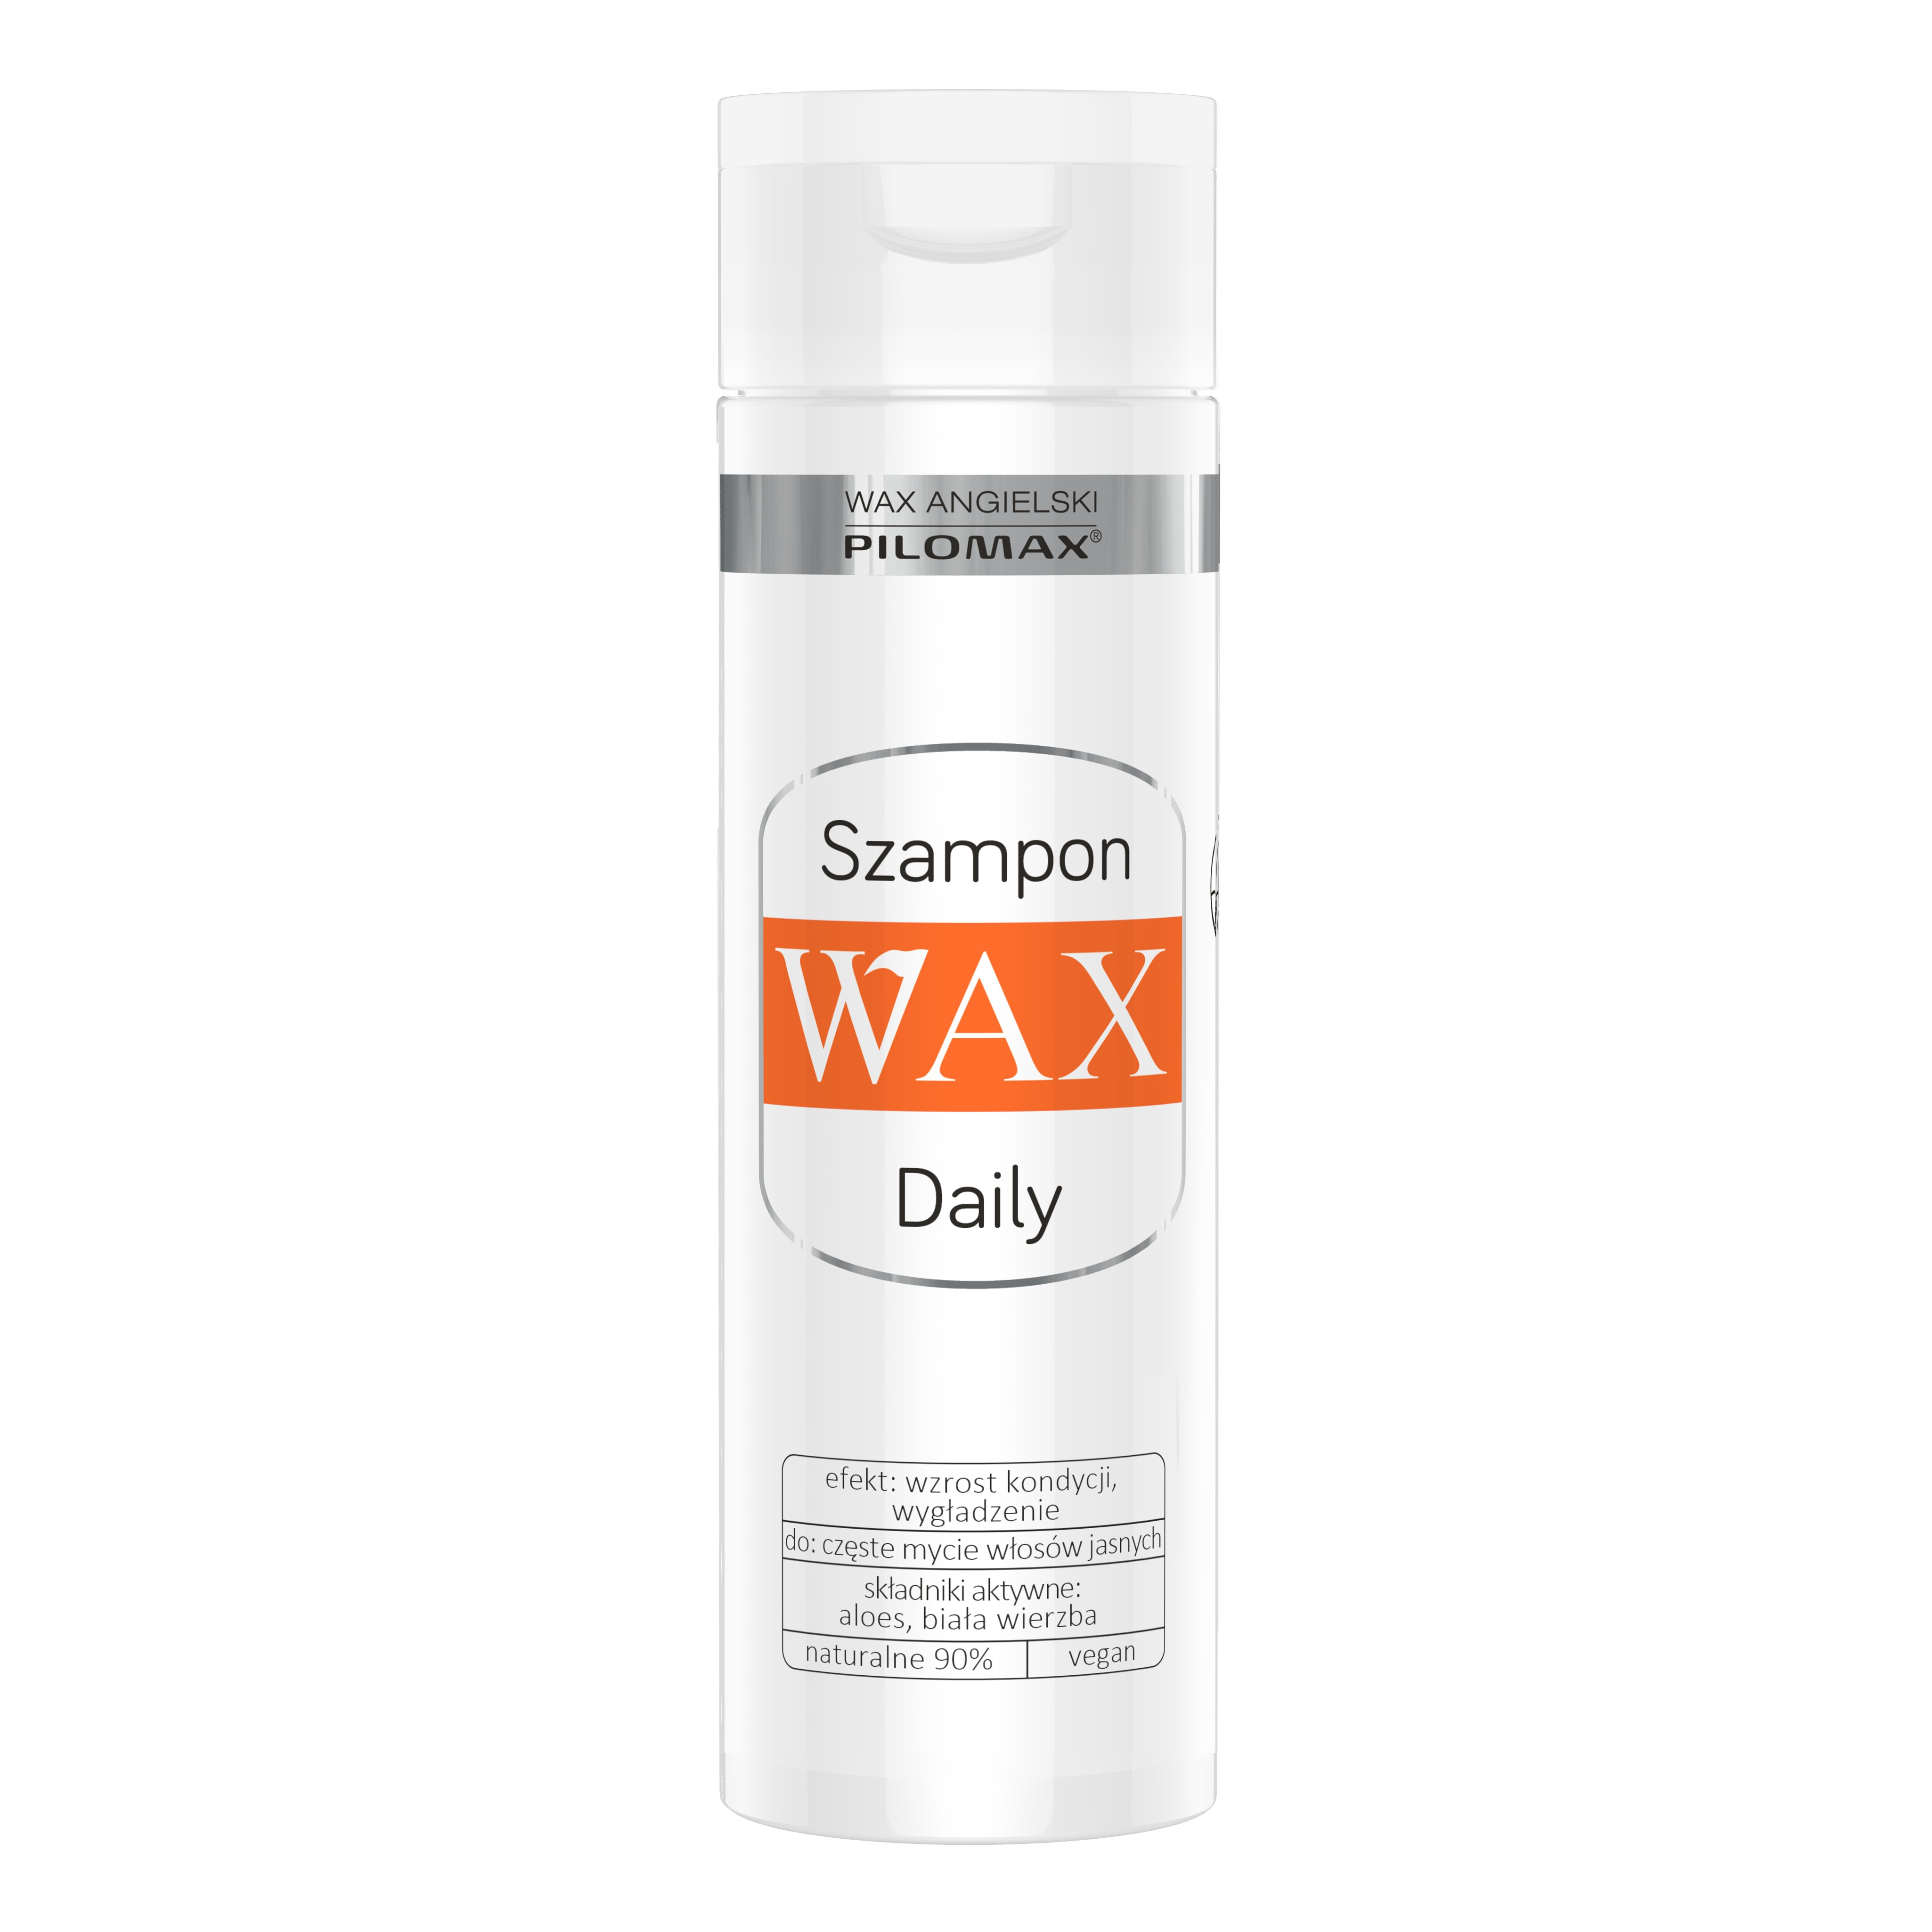 laboratorium pilomax szampon codzienny do włosów jasnych